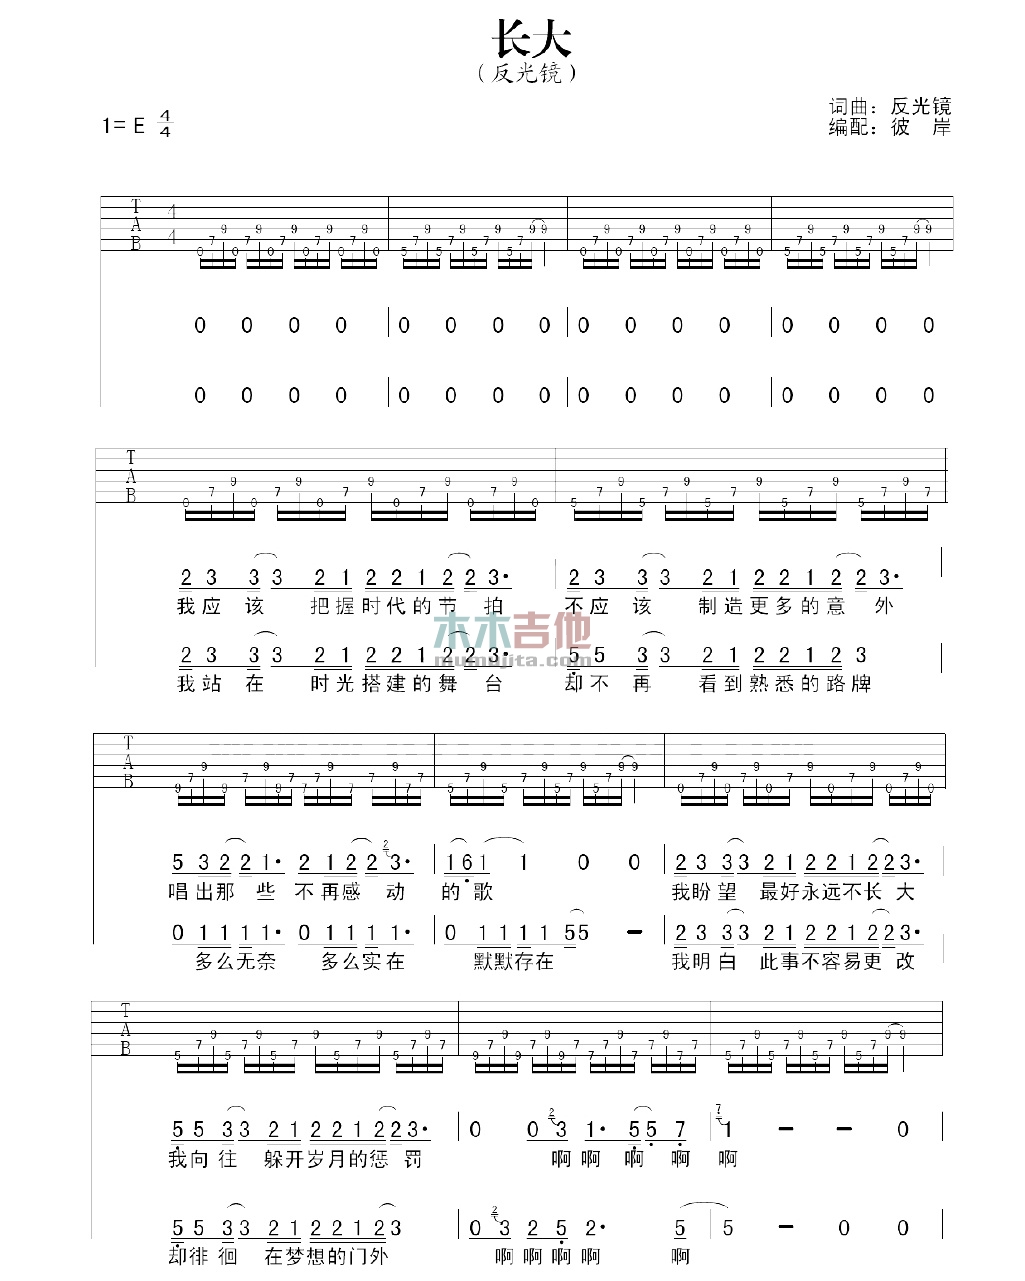 反光镜乐队《长大》吉他谱-Guitar Music Score